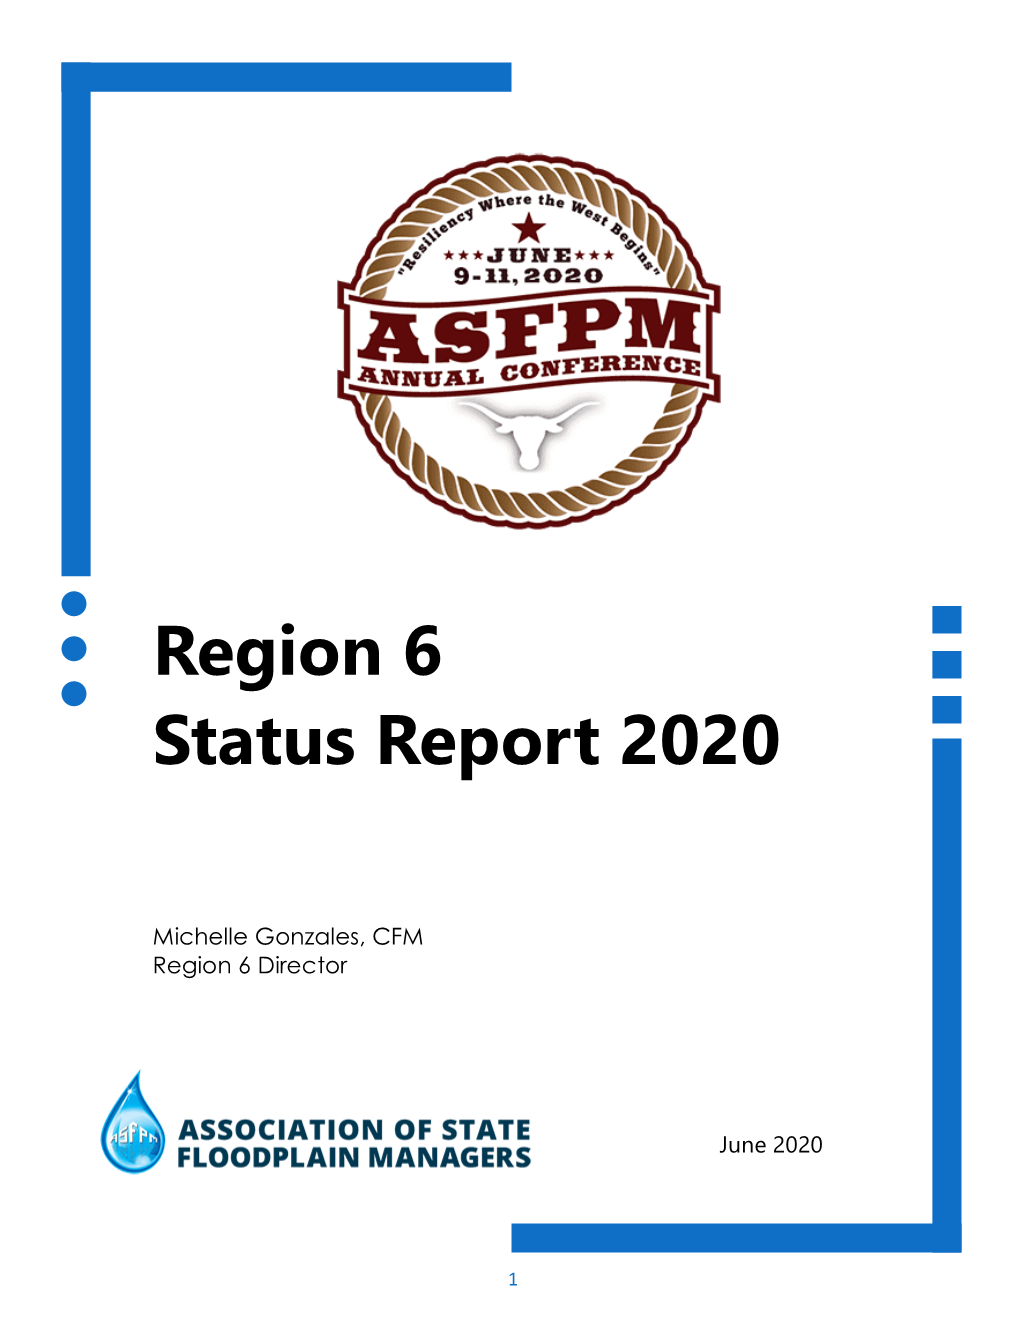 Region 6 Status Report 2020